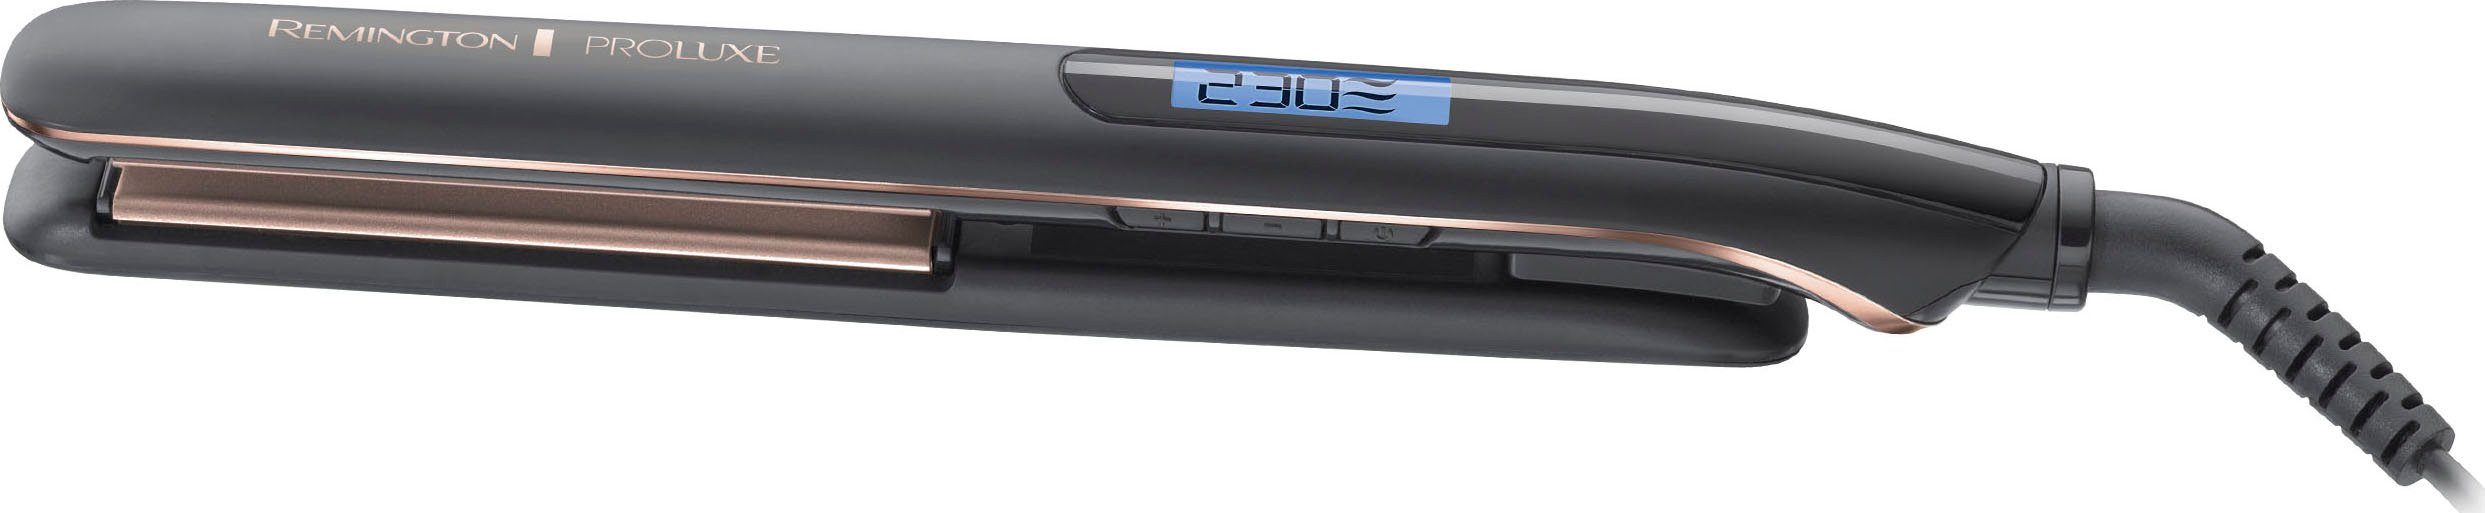 OPTIheat-Technologie, Midnight PROluxe Remington Temperatureinstellungen °C Glätteisen S9100B von Ultimate-Glide-Keramik-Beschichtung, E51 9 150-230